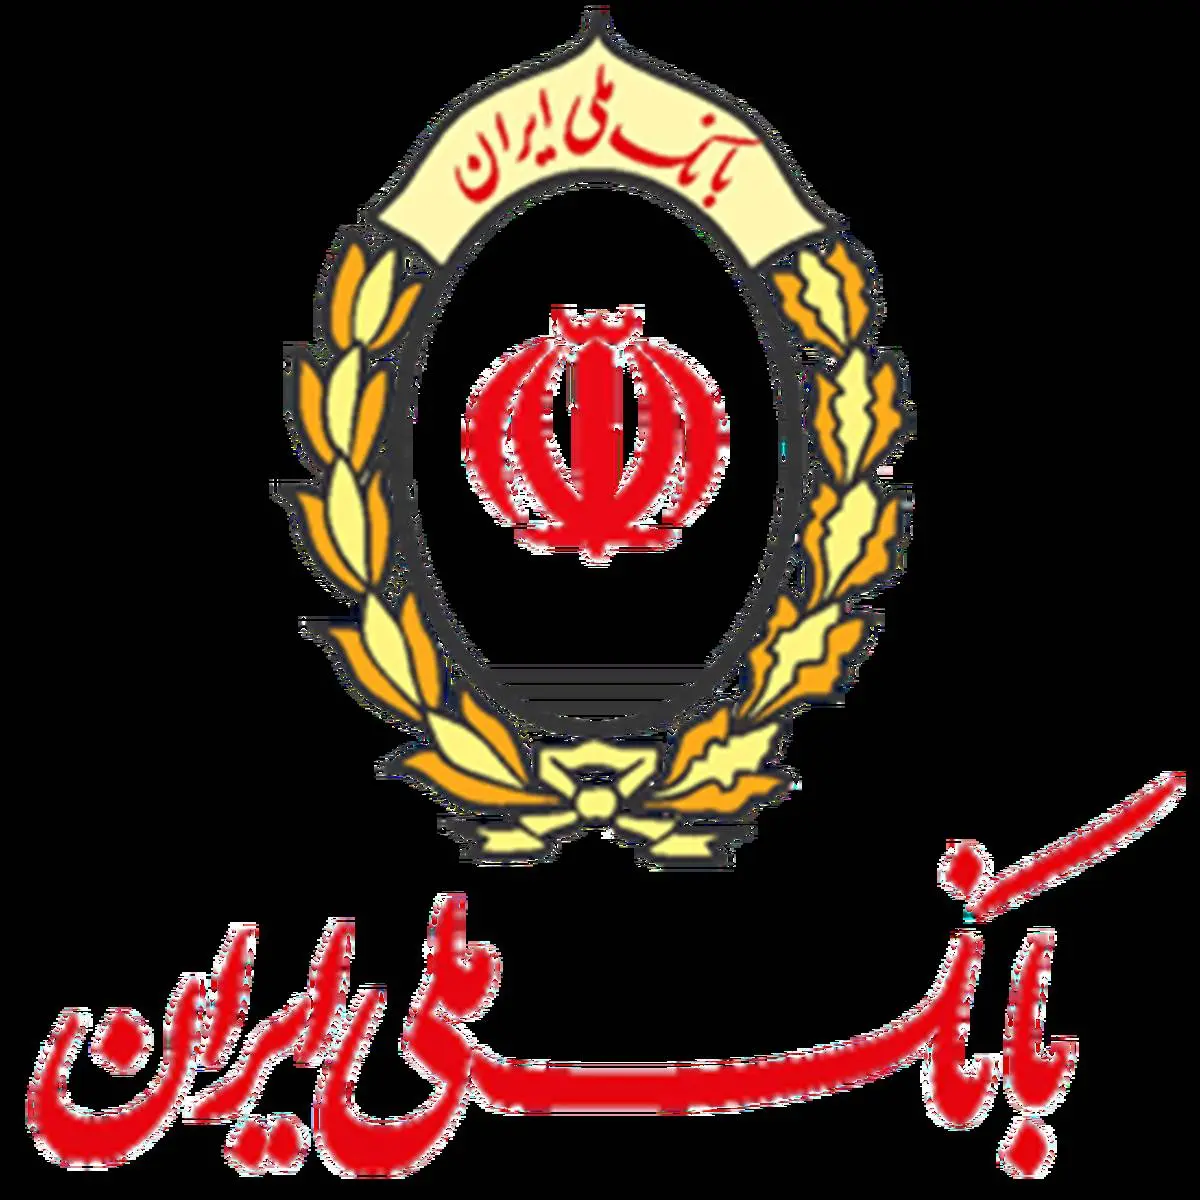 دستاوردهای «برجام» برای بانک ملی ایران